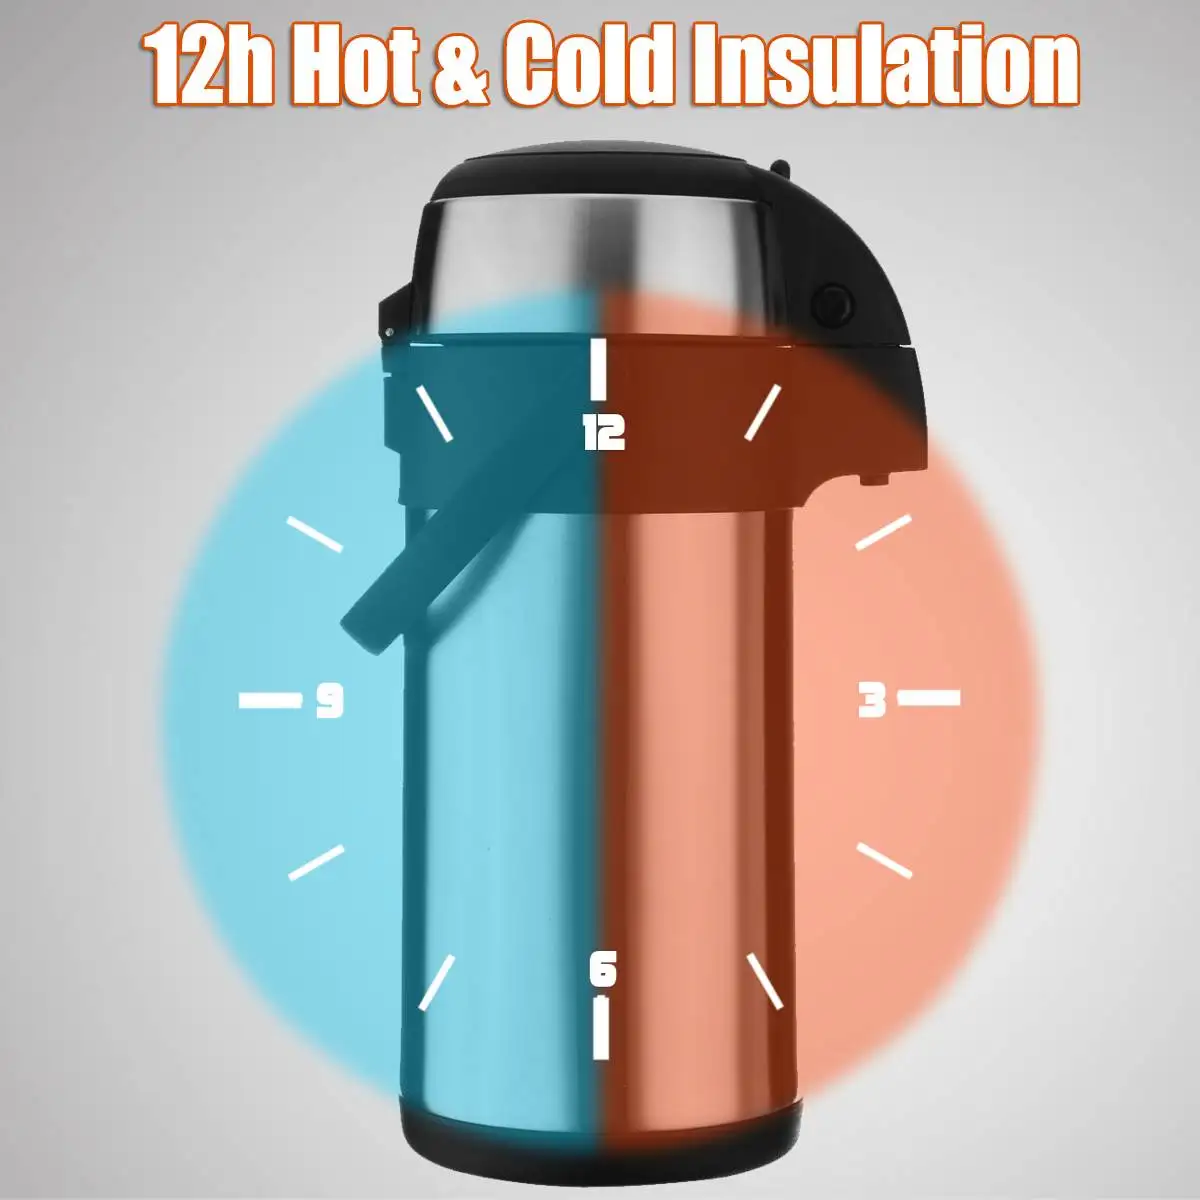 3л вакуумный насос действие Airpot горячий/холодный кофейный термос питание кувшин из нержавеющей стали с кнопкой блокировки и удобной ручкой для переноски